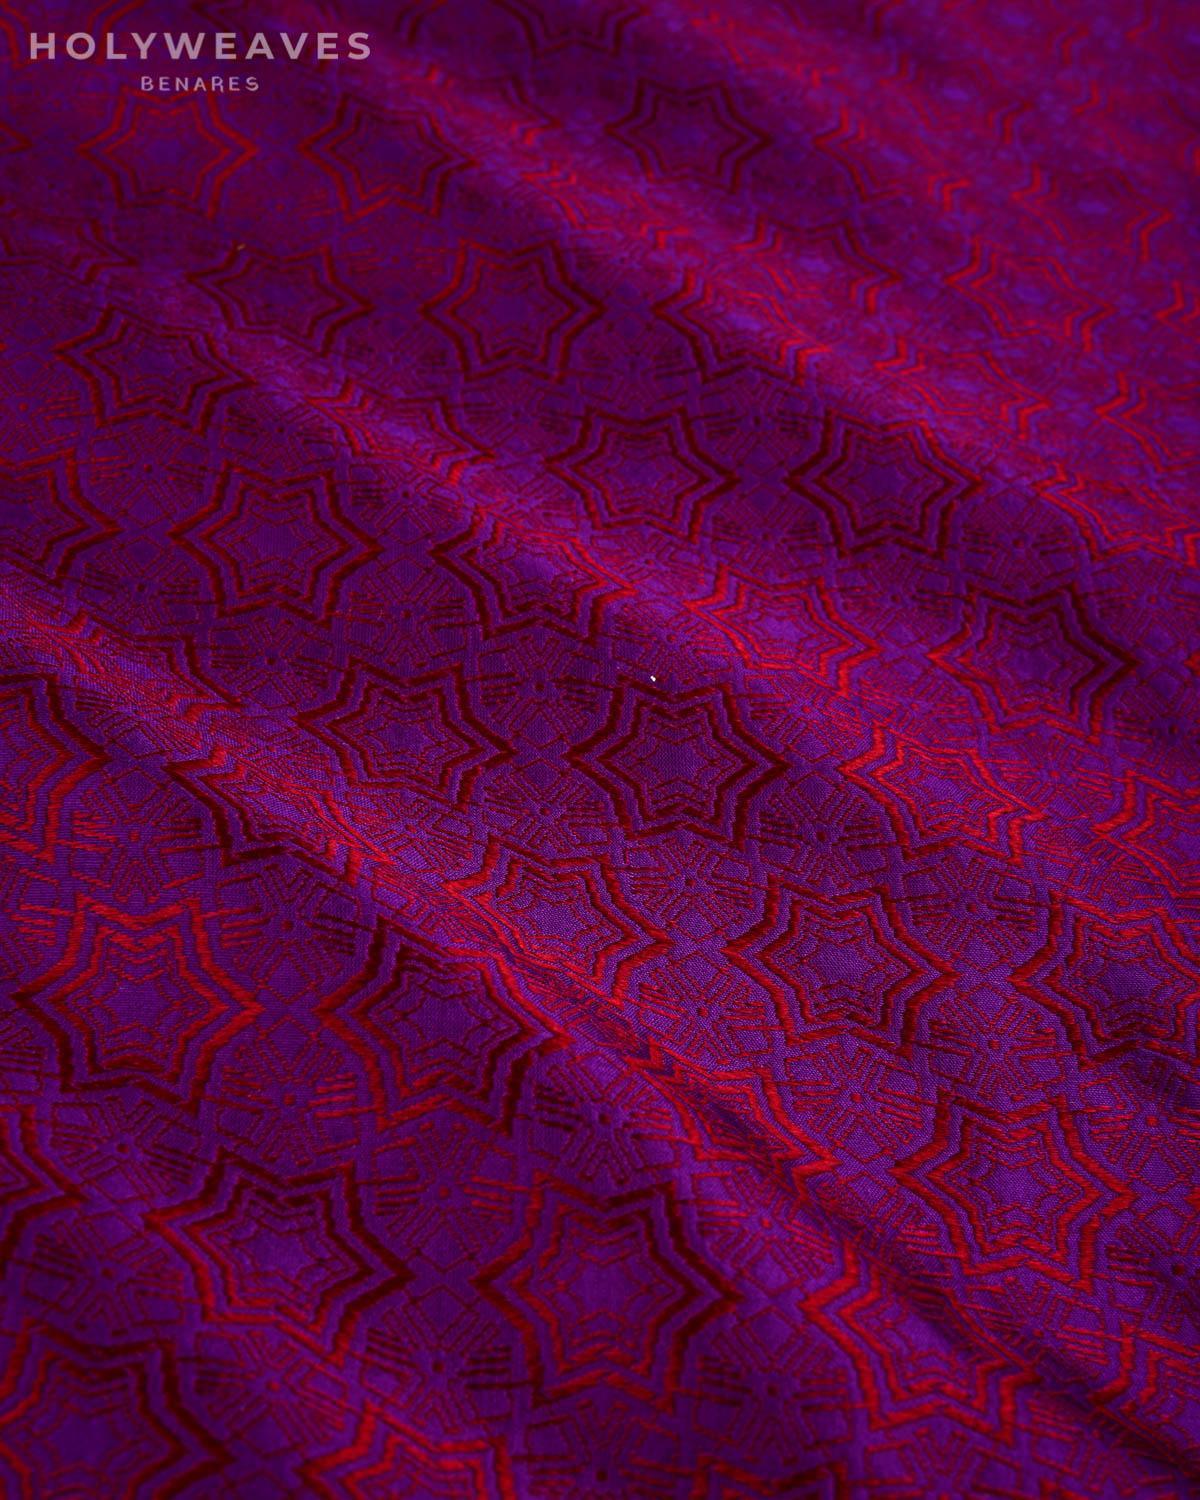 Red on Purple Banarasi Kaleidoscopic Stars Tanchoi Handwoven Katan Silk Fabric - By HolyWeaves, Benares